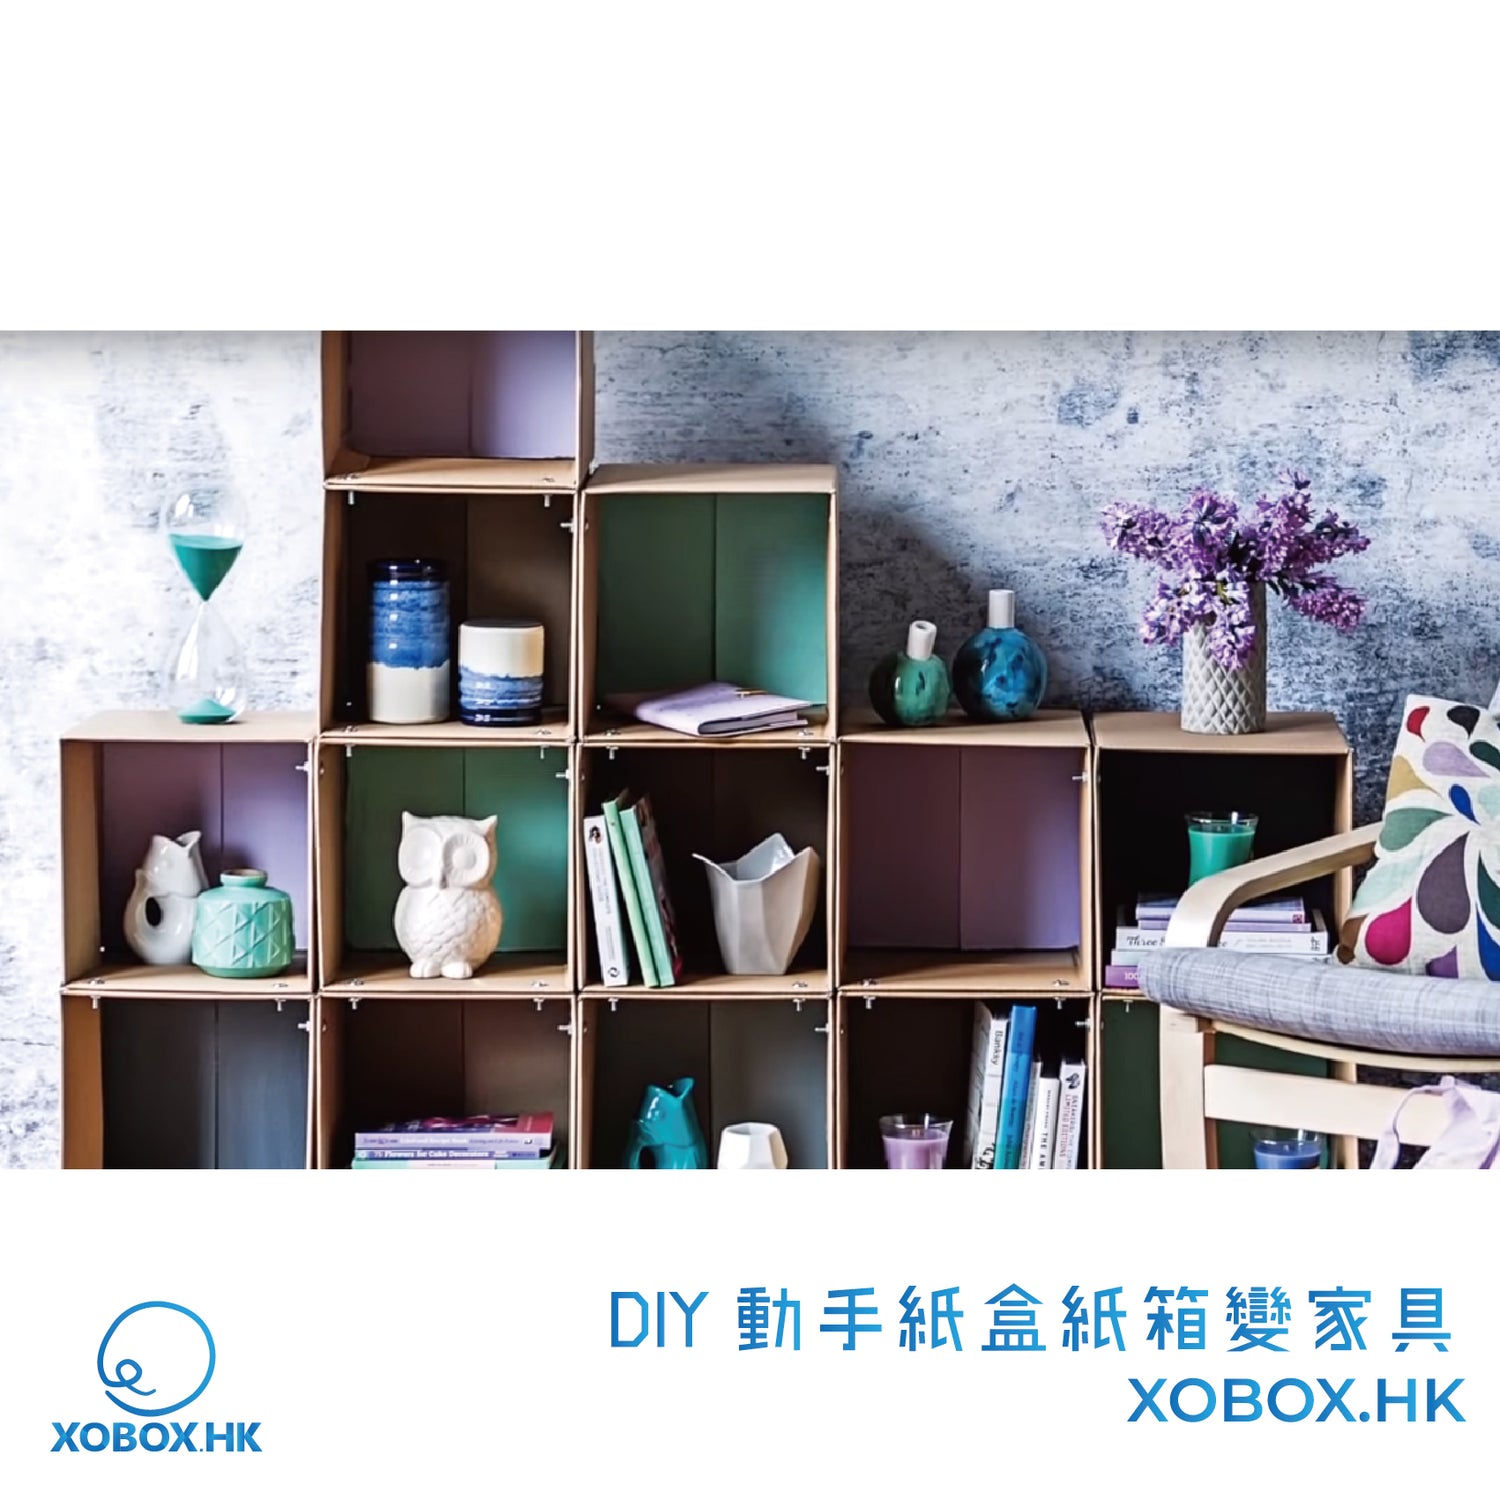 DIY 動手紙盒紙箱變家具 | XOBOX.HK